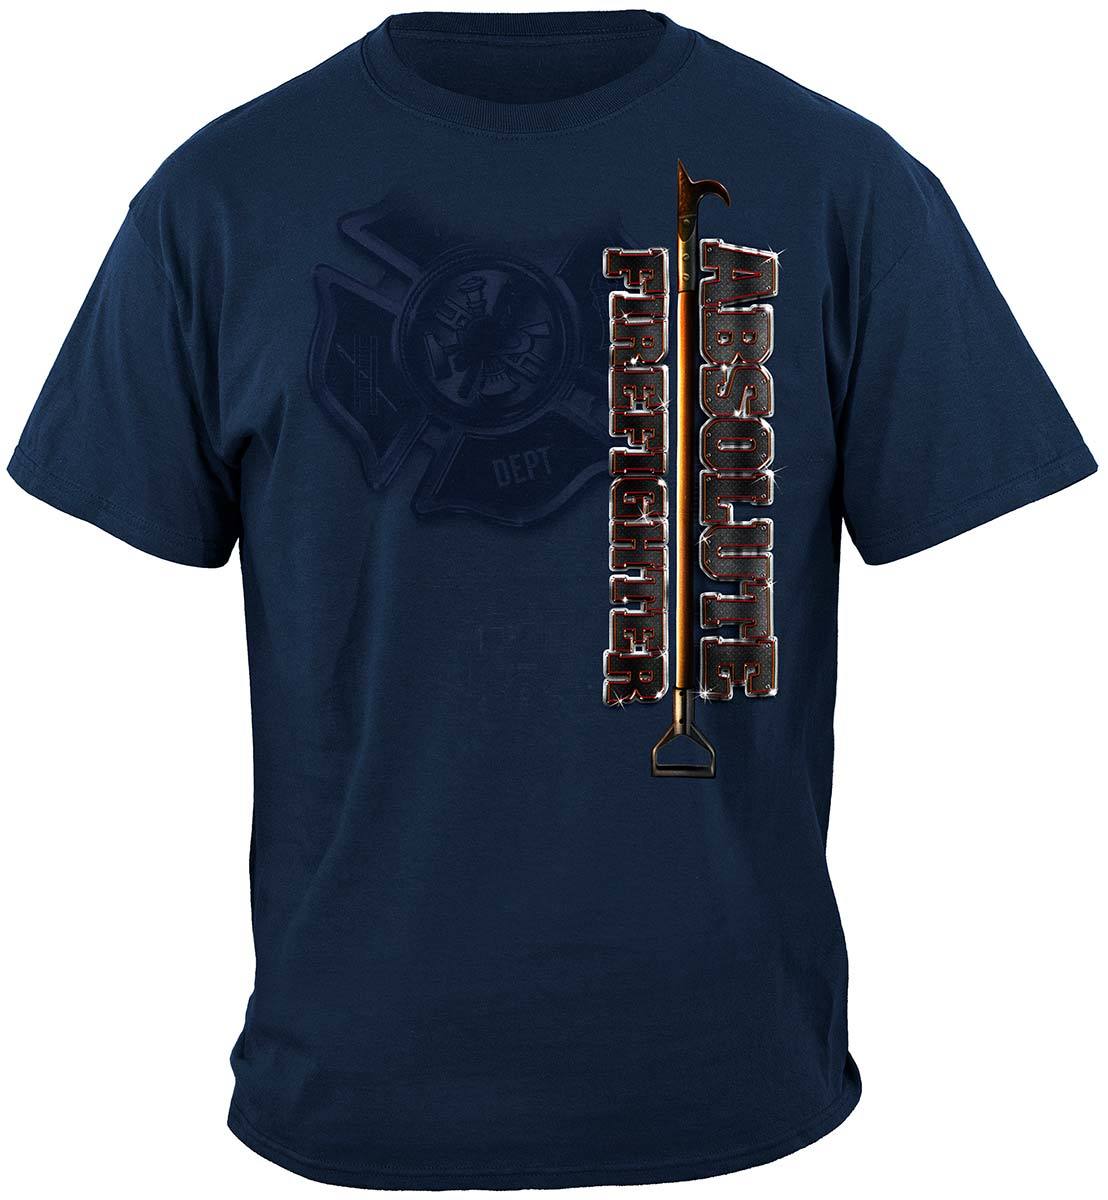 Absolute Firefighter Blue Print Premium T-Shirt